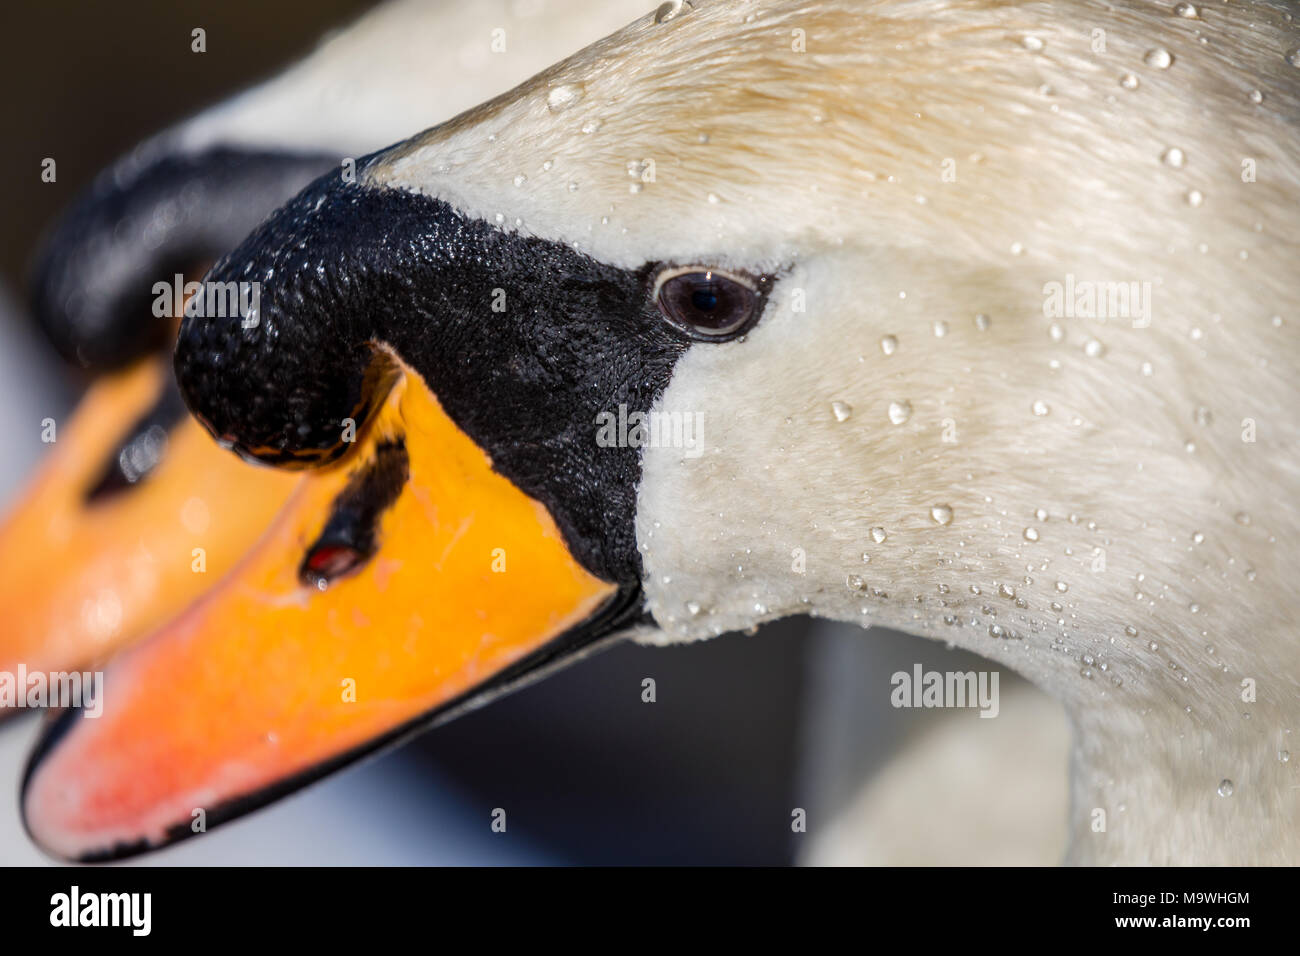 Cigno, (Cygnus olor), Regno Unito - close up di testa con la seconda testa di cigno in background Foto Stock